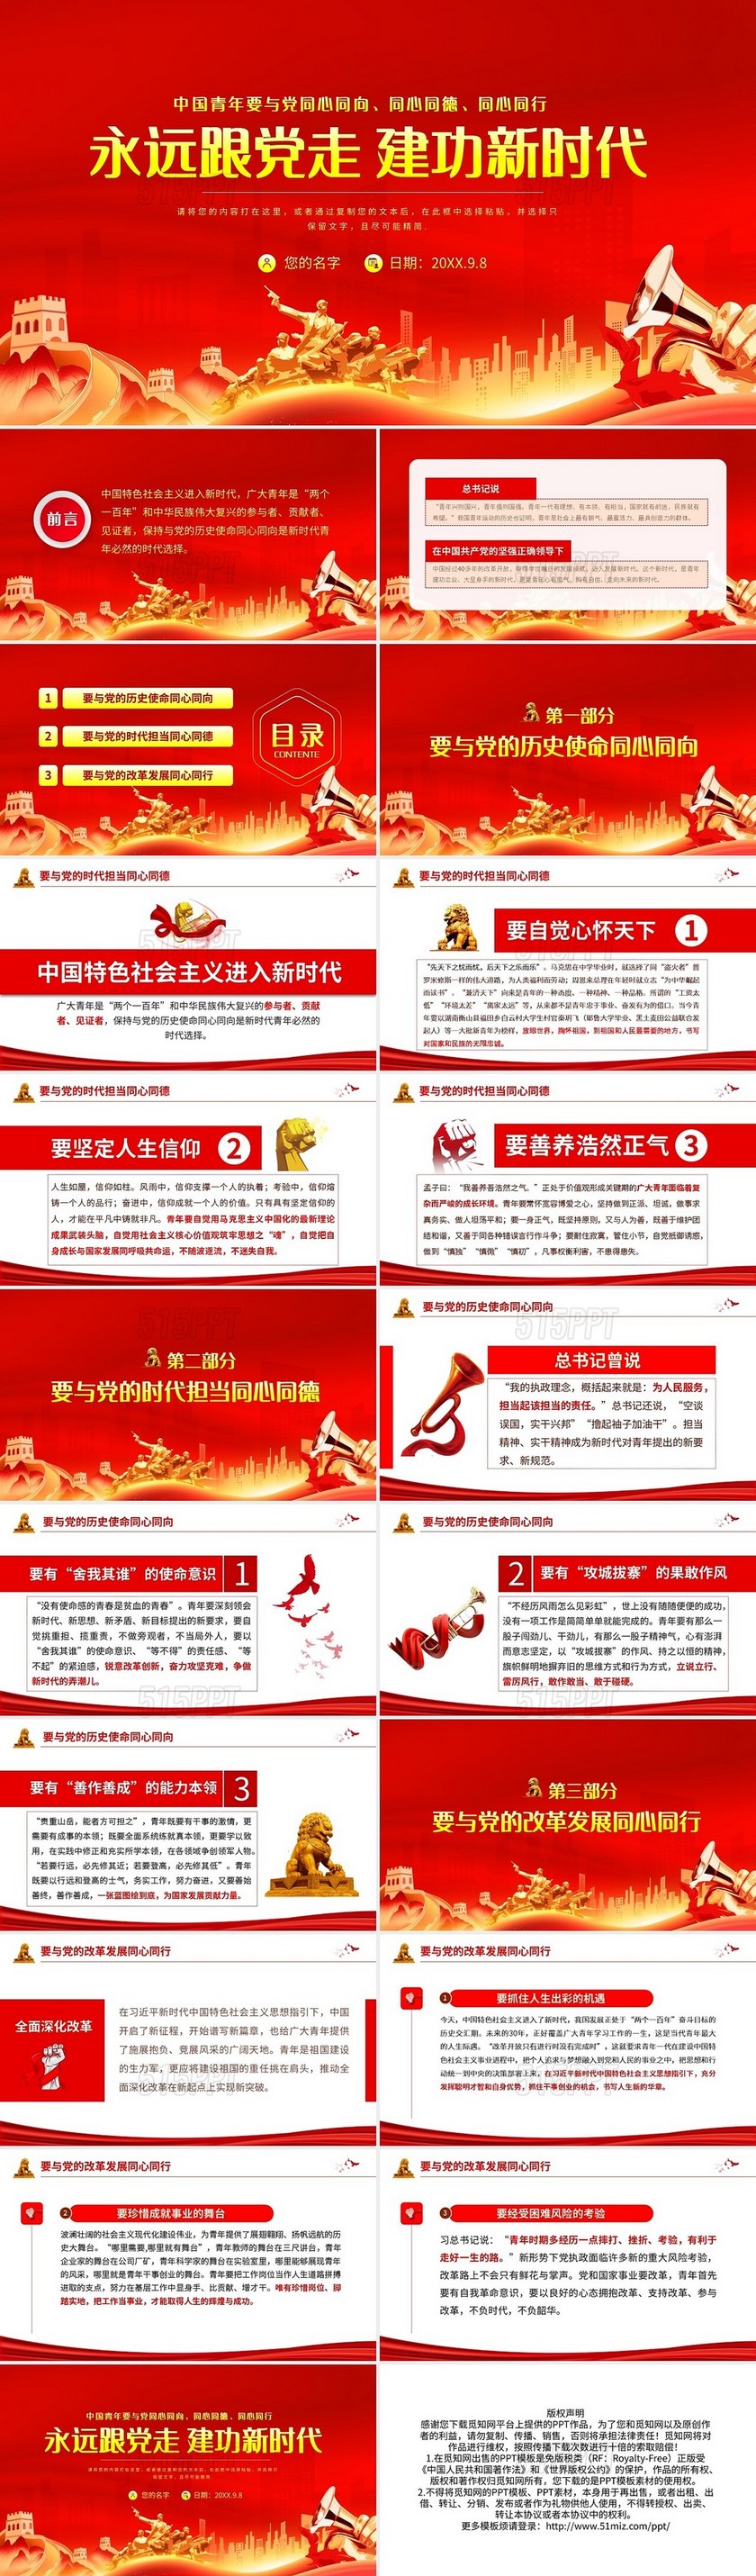 红色简约新时代中国青年永远跟党走PPT模板宣传PPT动态PP二十大